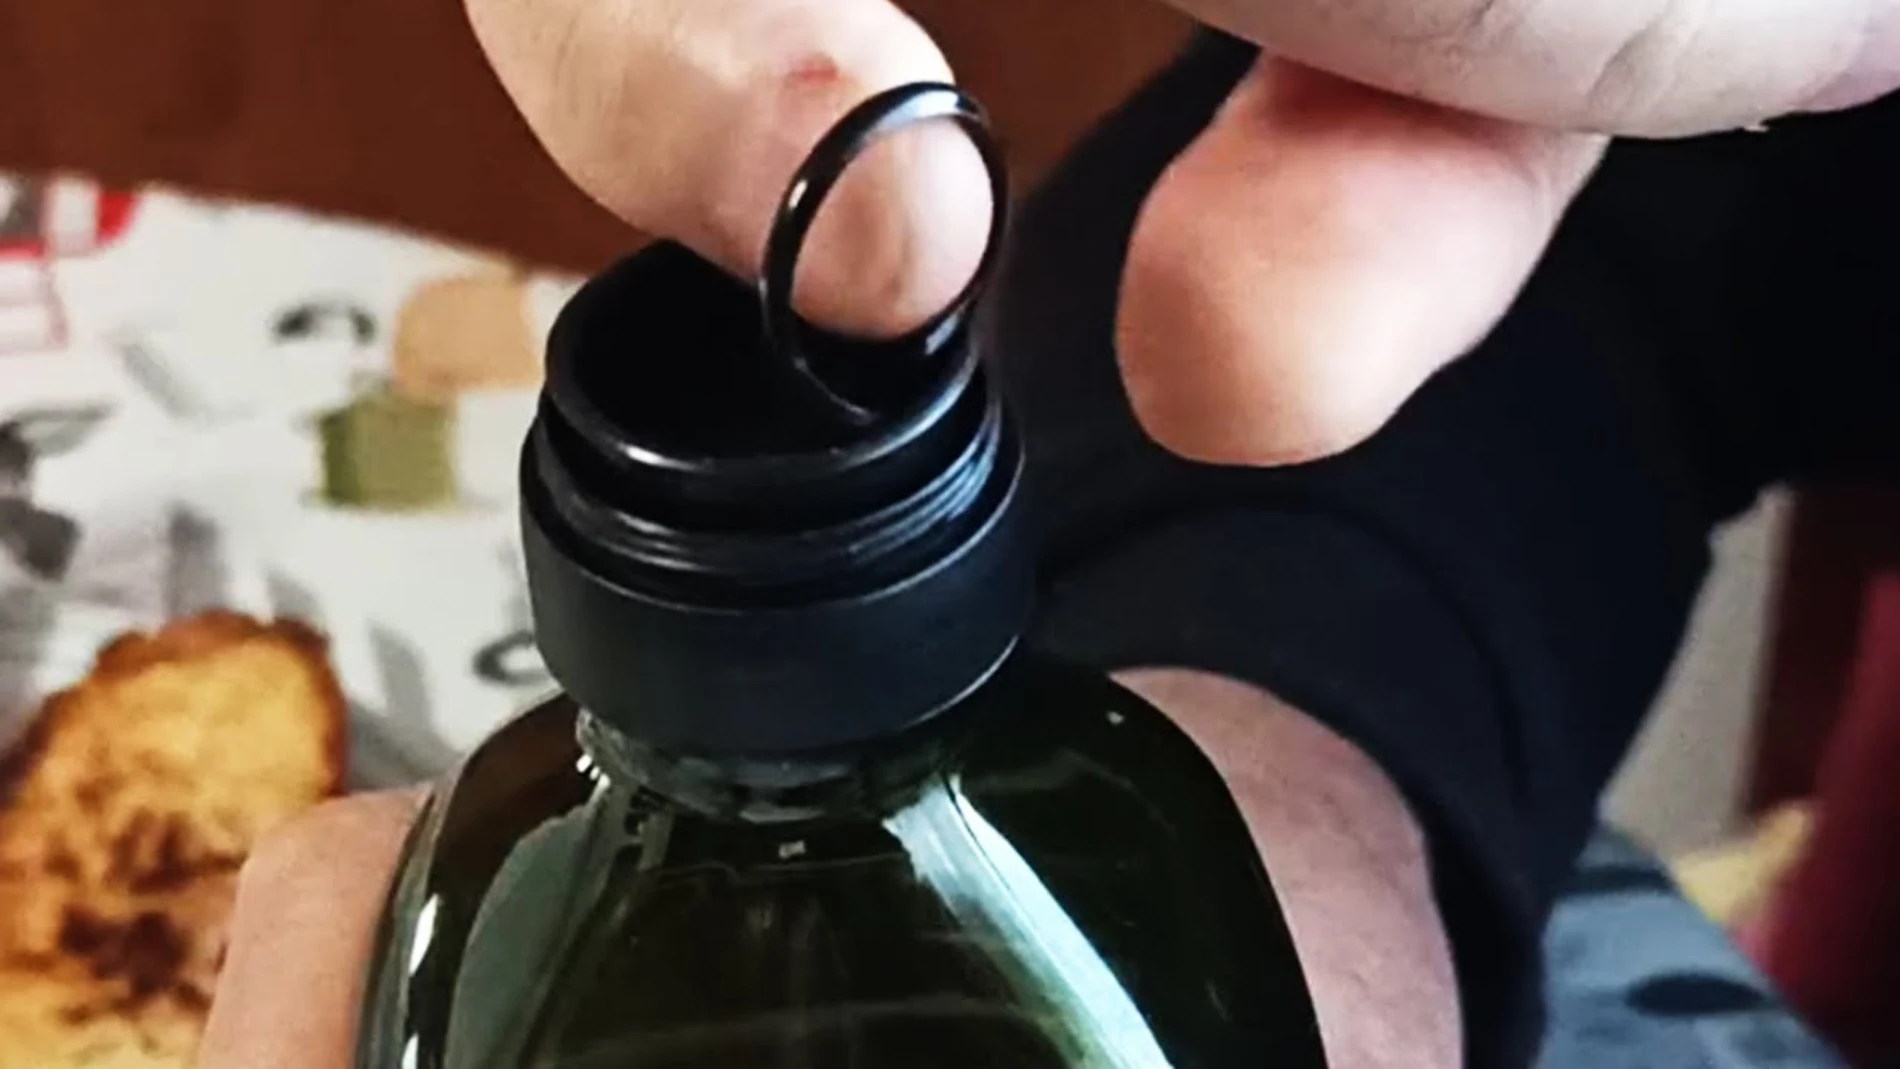 La anilla de las botellas de plástico puede utilizarse como dosificador | Fuente: Captura de pantalla youtube MiniKong, el abuelito GAMER